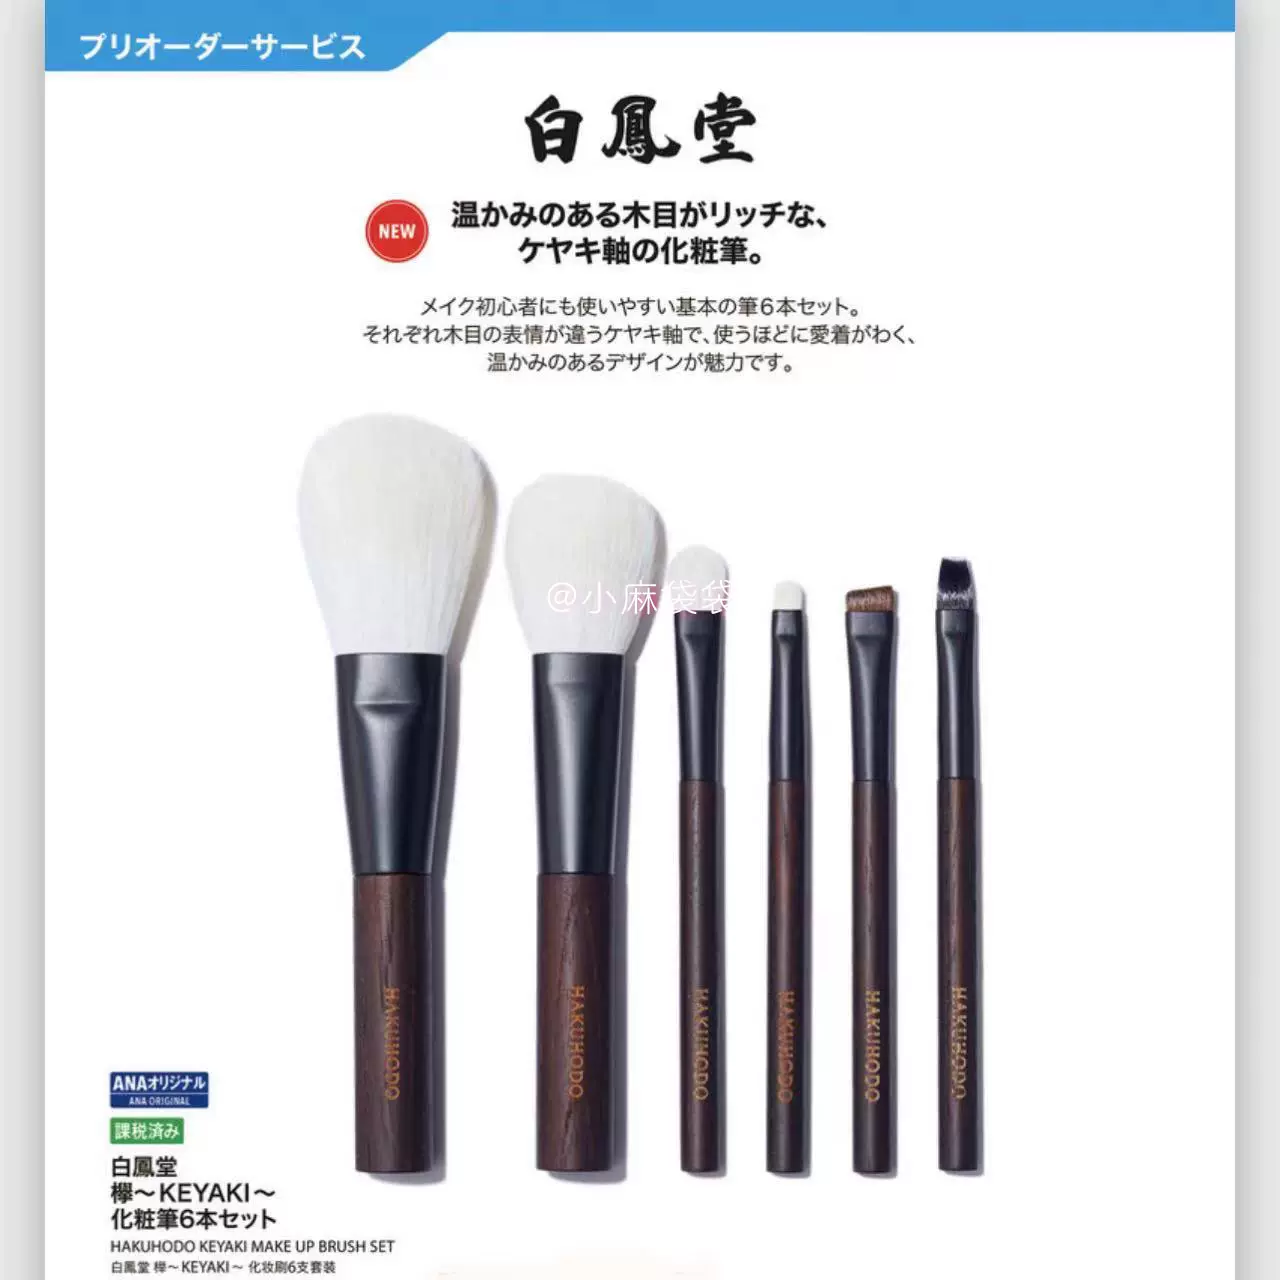 白鳳堂 ブラシ ベーシック6本セット -SAKURA- 全日空 ANA - メイクアップ